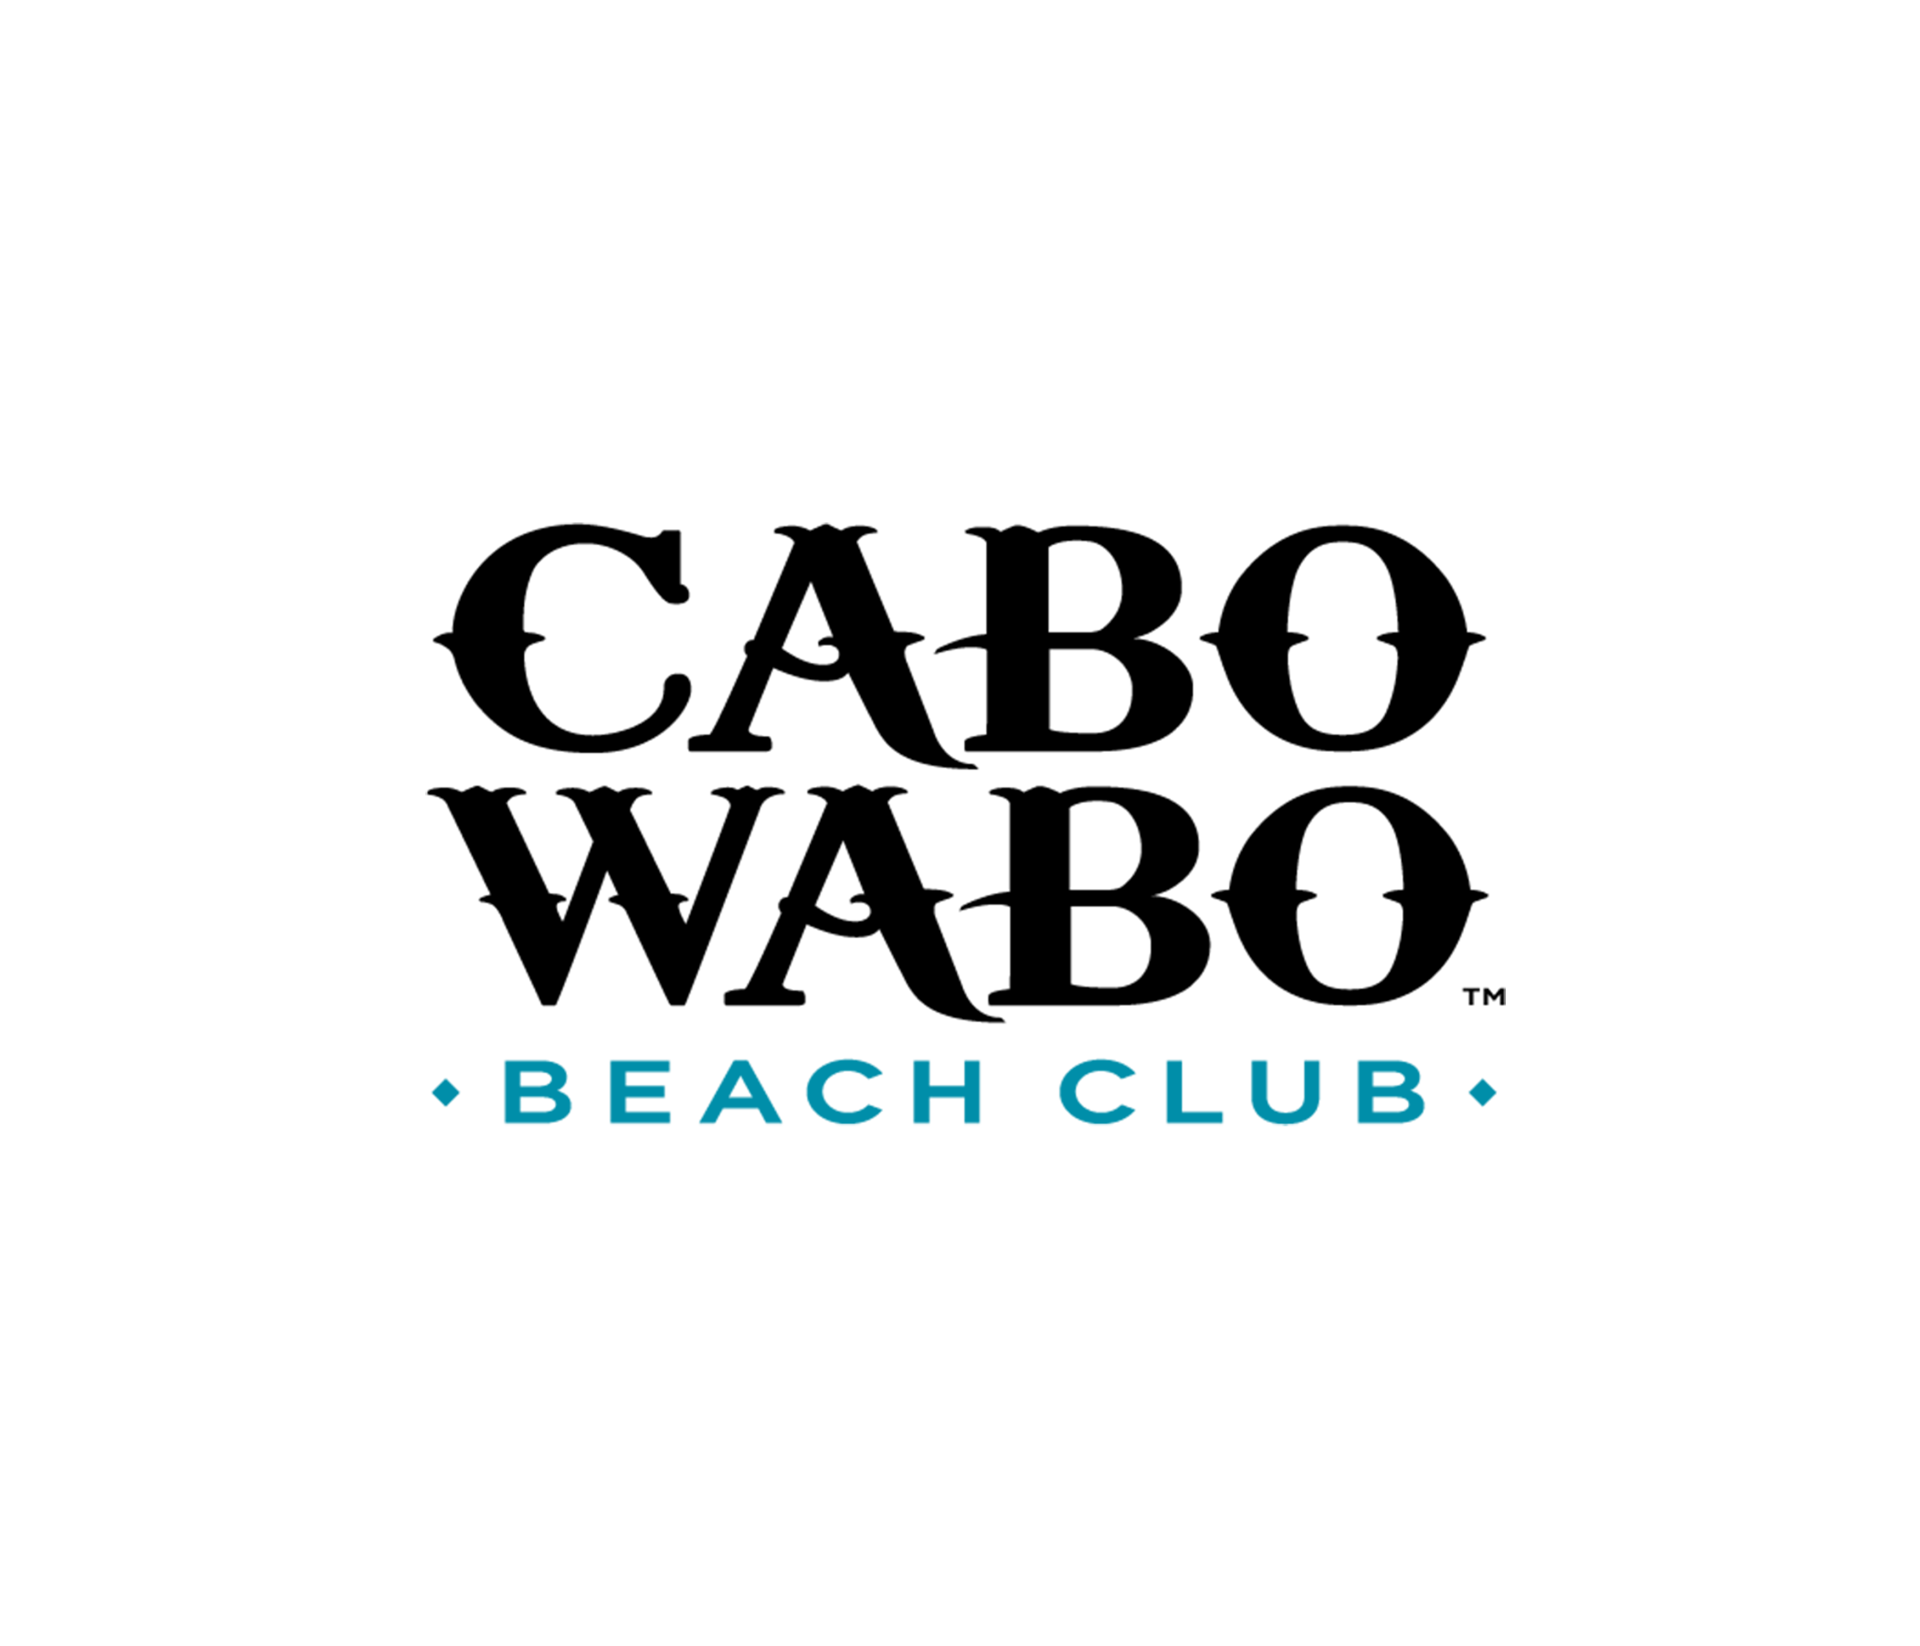 Cabo Wabo Beach Club logo